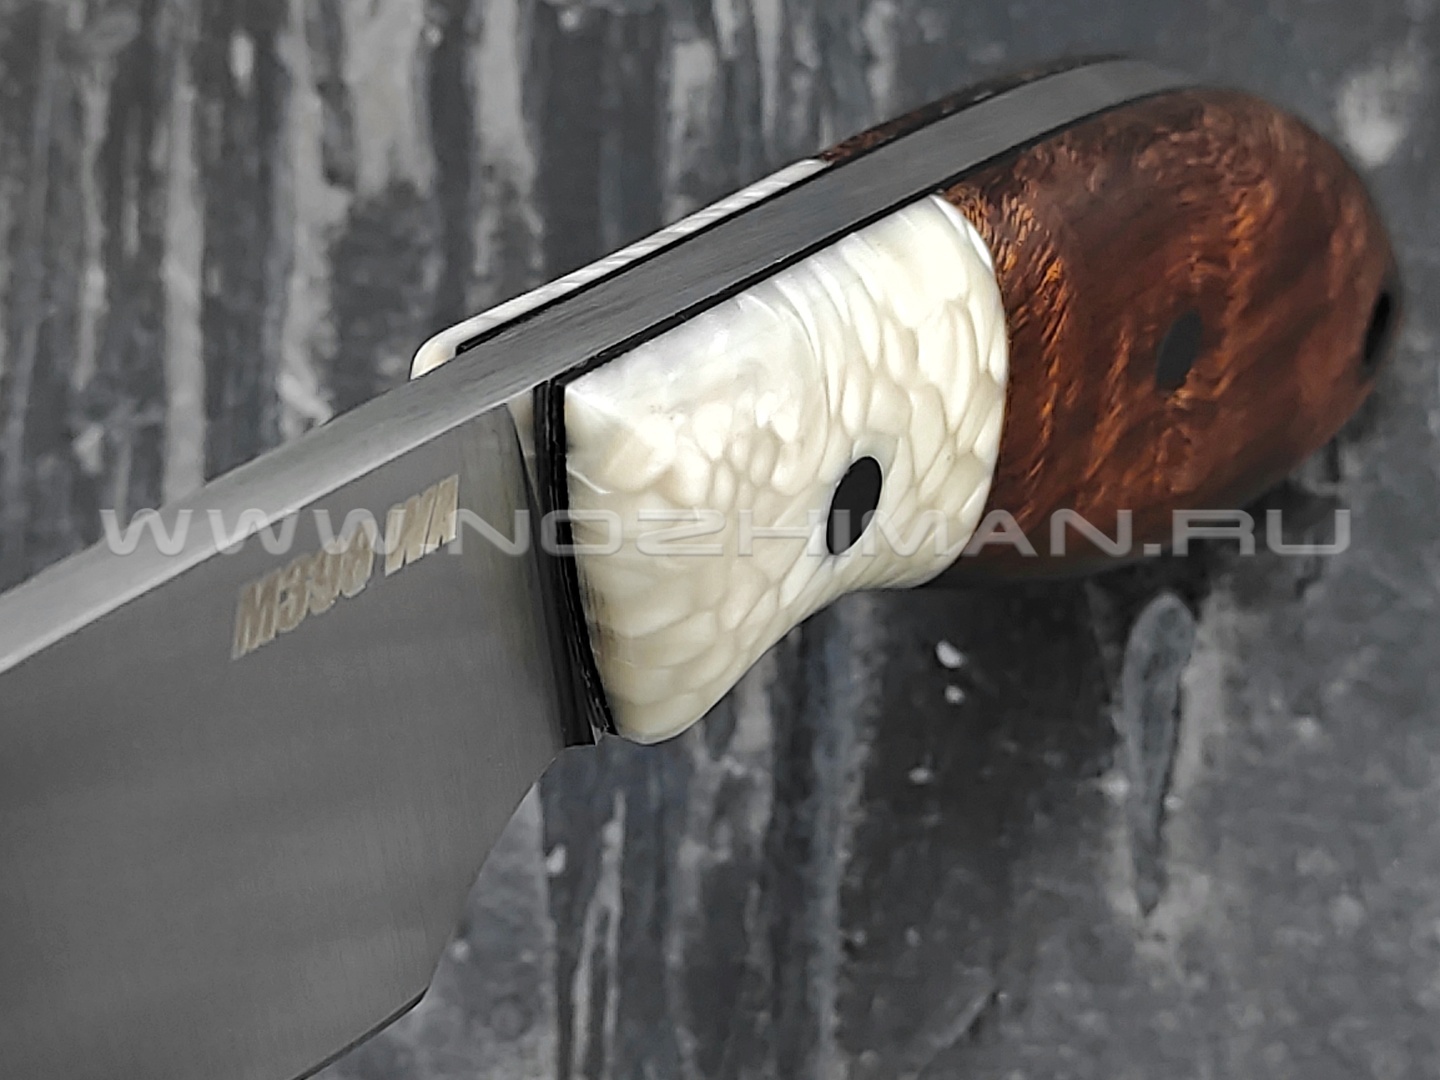 Волчий Век нож "Масичька" сталь M398 WA, рукоять Ironwood, композит